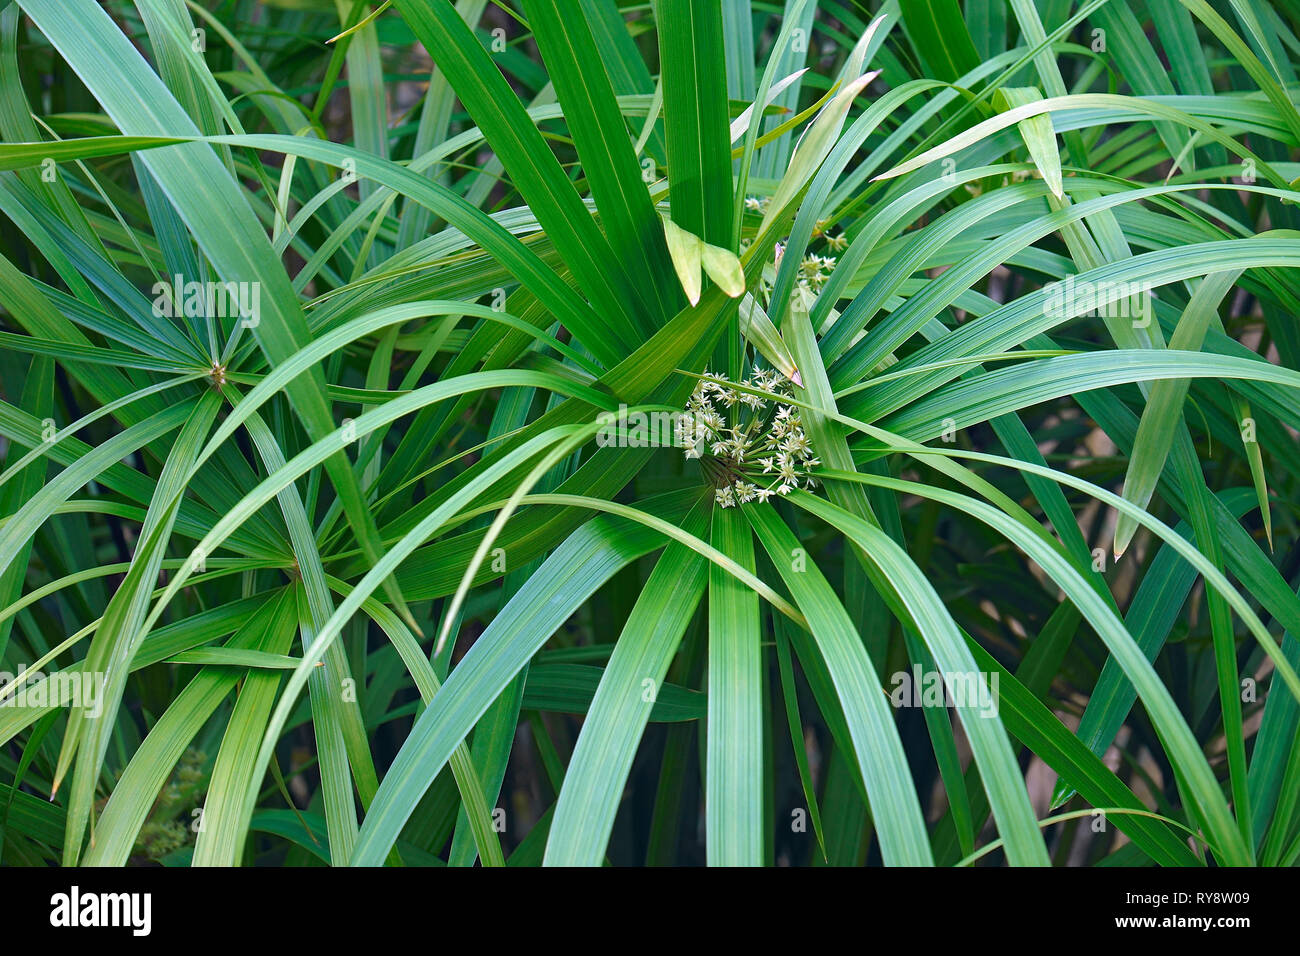 Umbrella plant (Cyperus alternifolius). Called Umbrella palm, Umbrella papyrus and Umbrella sedge also. Another scientific name is Cyperus involucratu Stock Photo